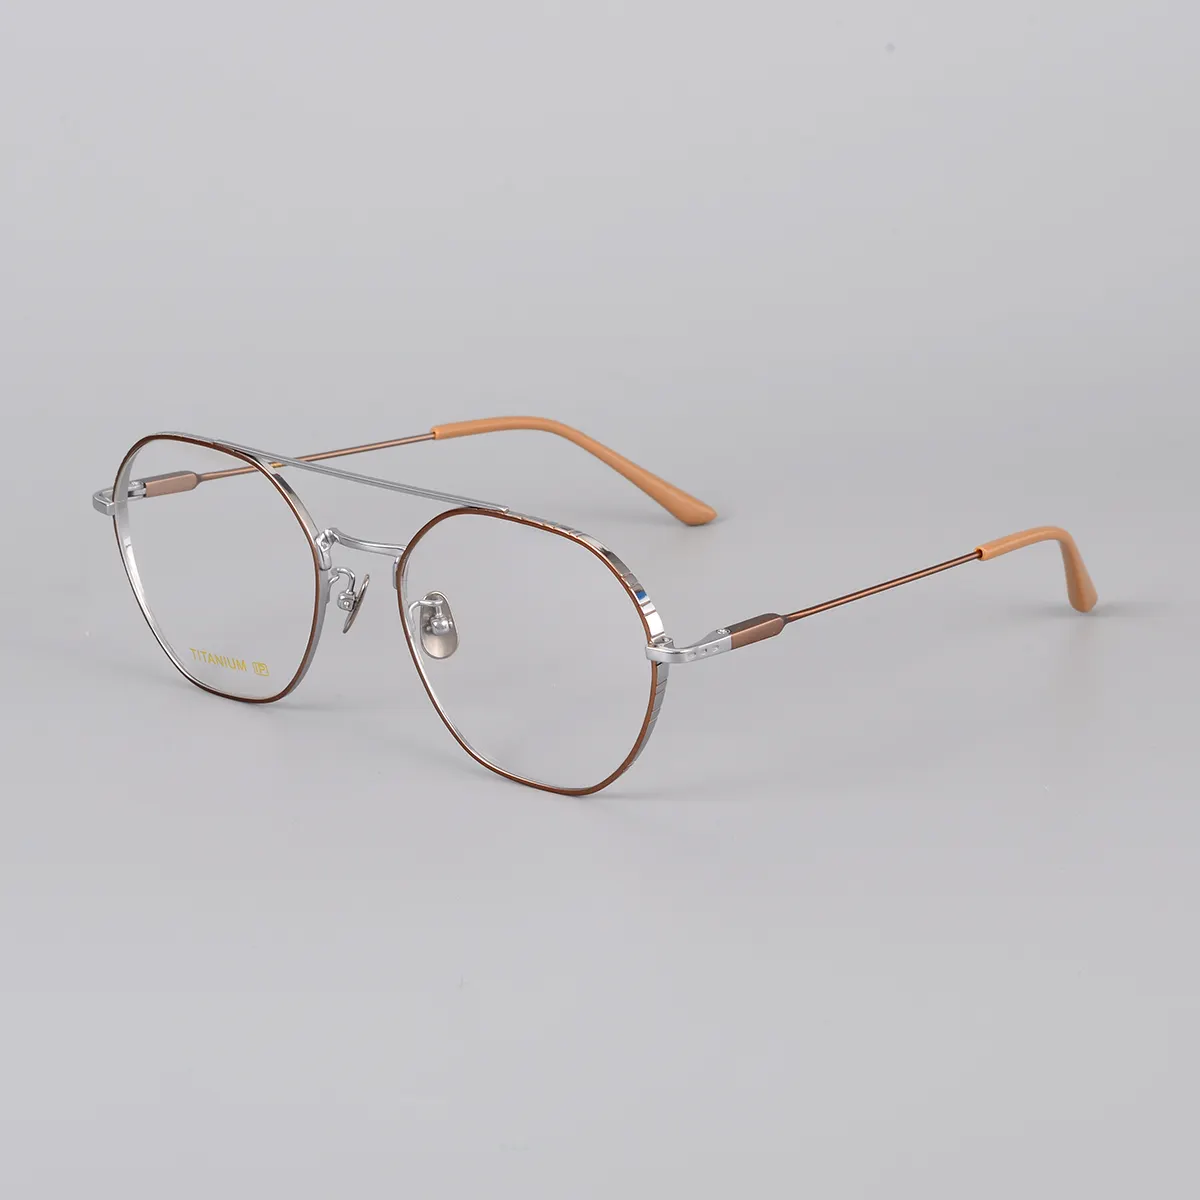 جسر مزدوج عالية الجودة الرجعية إطارات النظارات البصرية الكلاسيكية نمط إطار من التيتانيوم النظارات